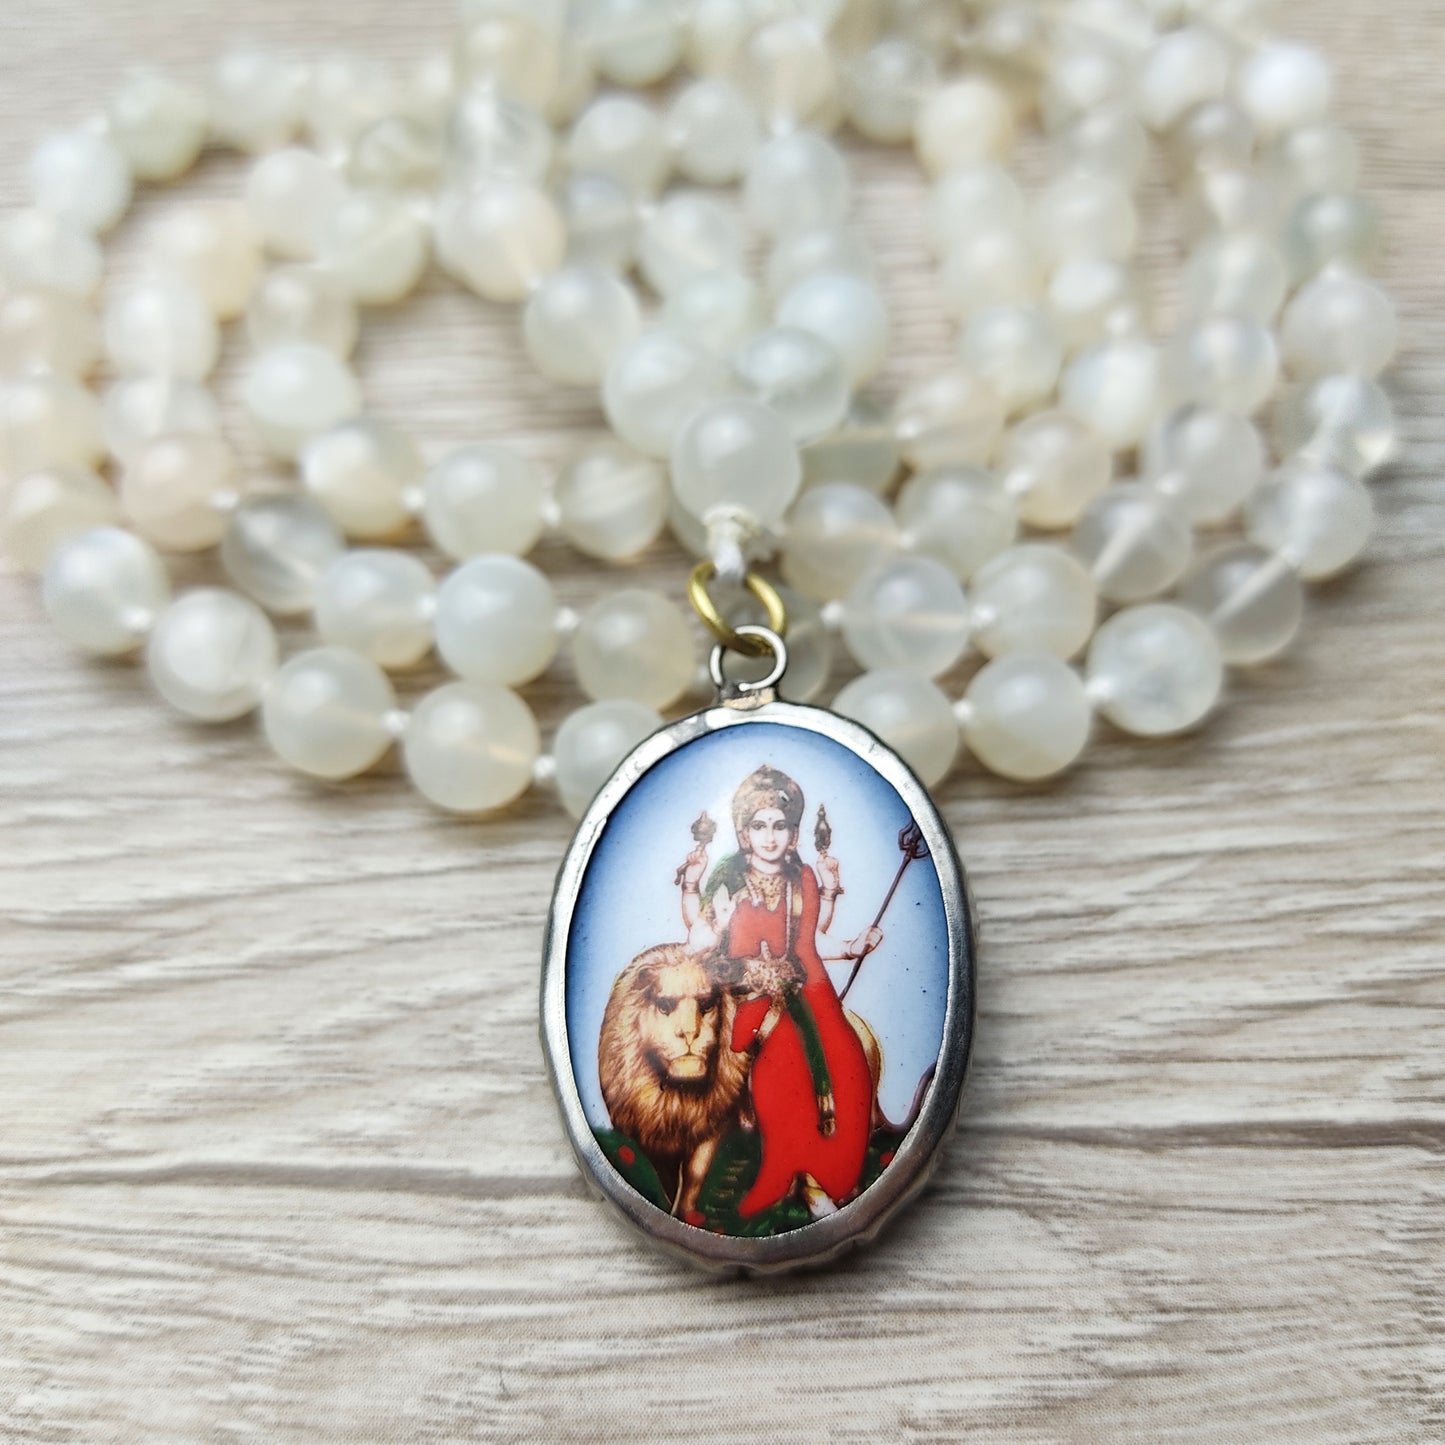 Genuine Moonstone Beads Necklace with India Goddess Durga Ma Pendant Yoga Gift